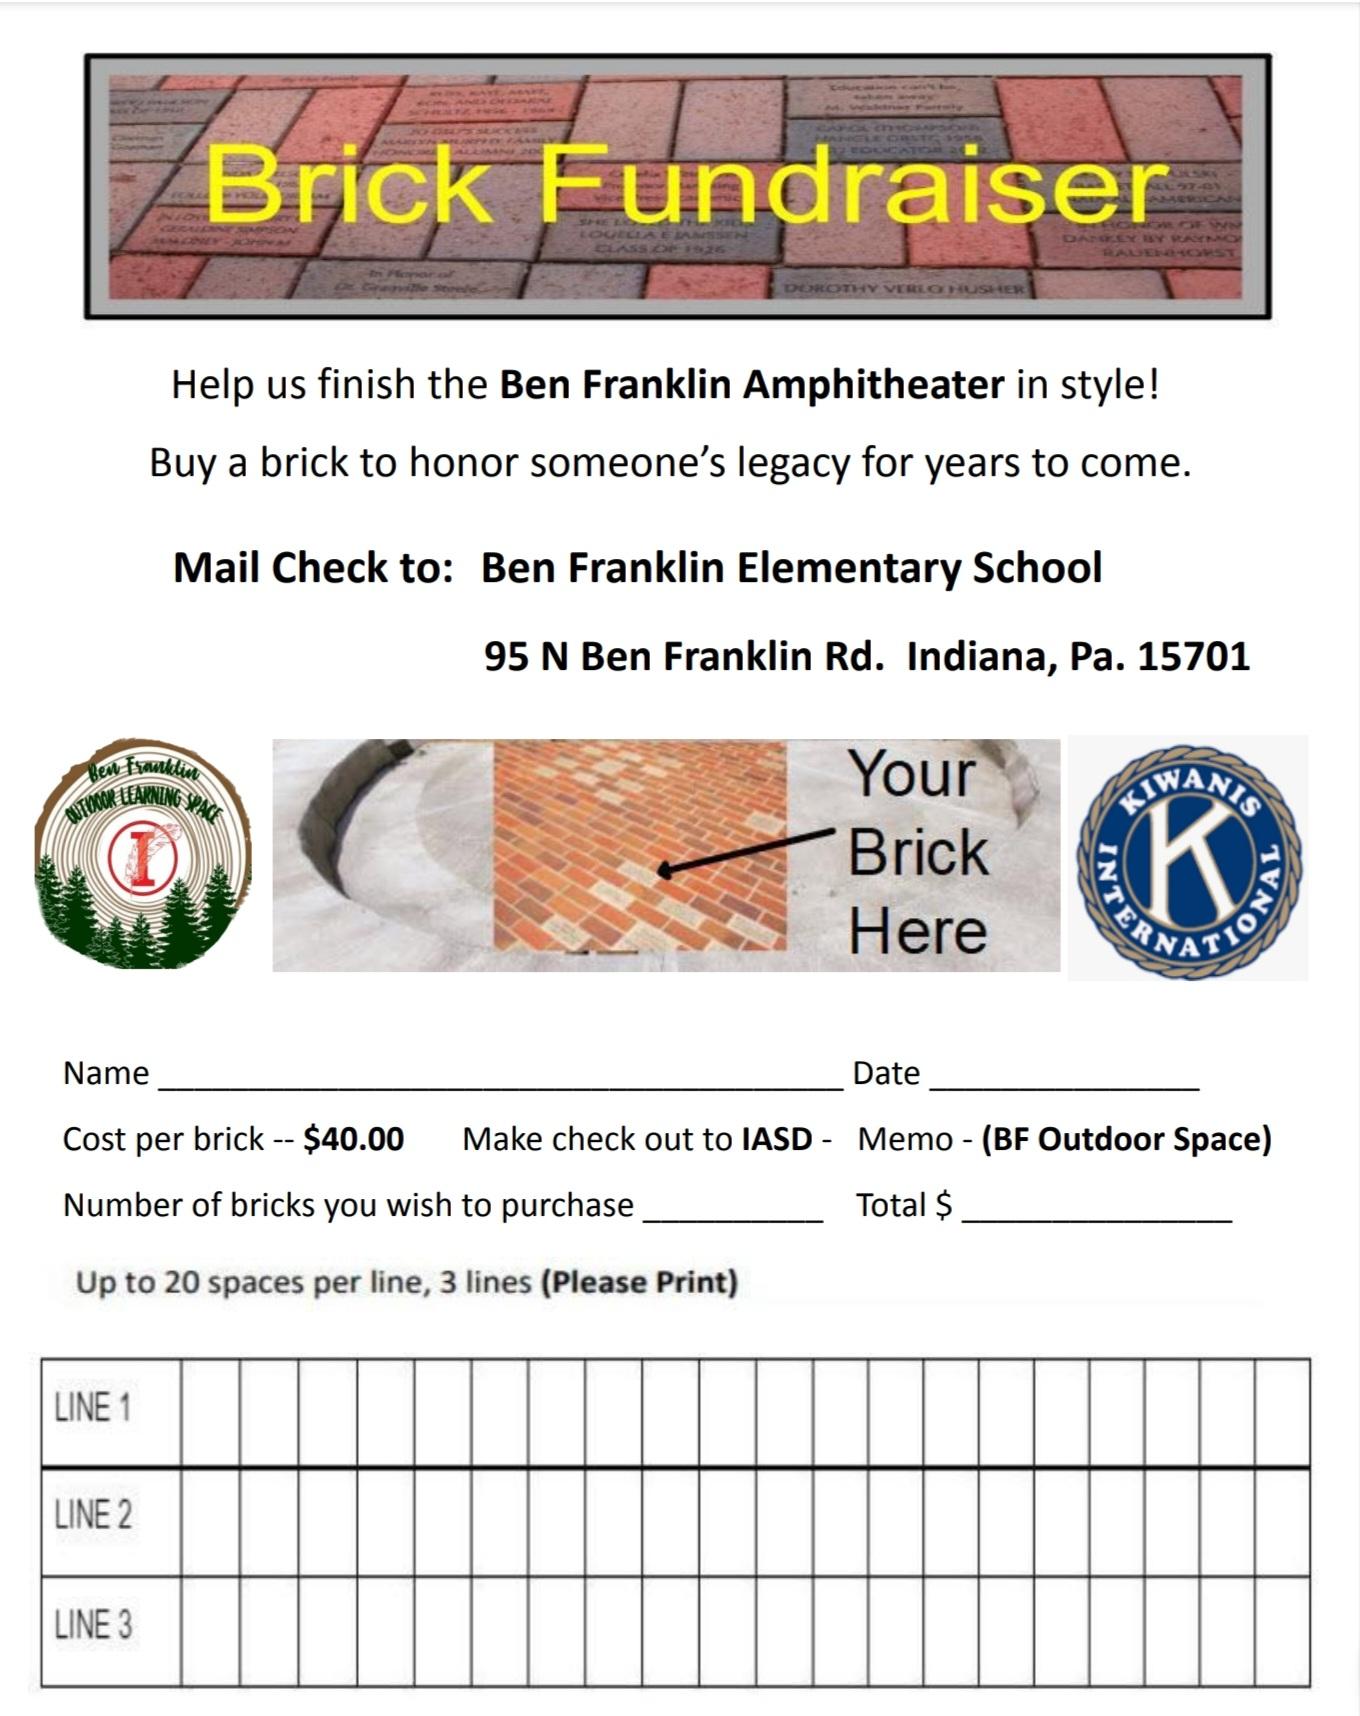 BF brick fundraiser form